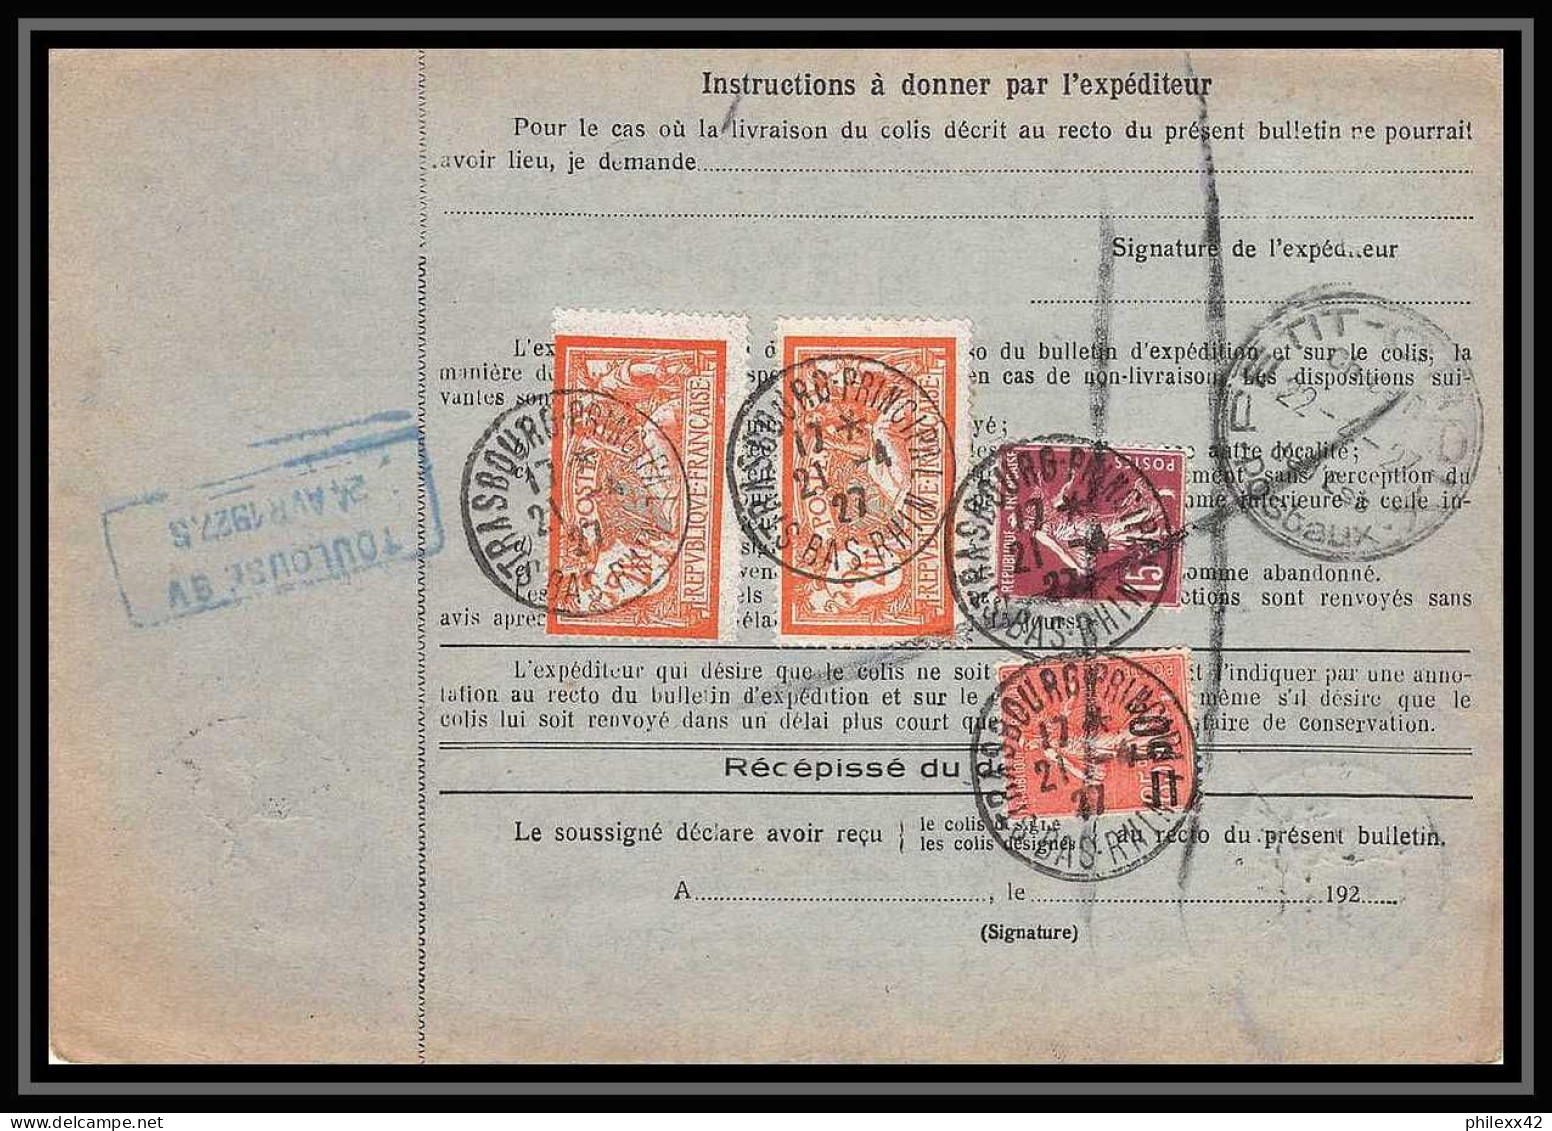 25086 Bulletin D'expédition France Colis Postaux Fiscal Haut Rhin 1927 Strasbourg Semeuse Merson 145 Alsace-Lorraine  - Lettres & Documents